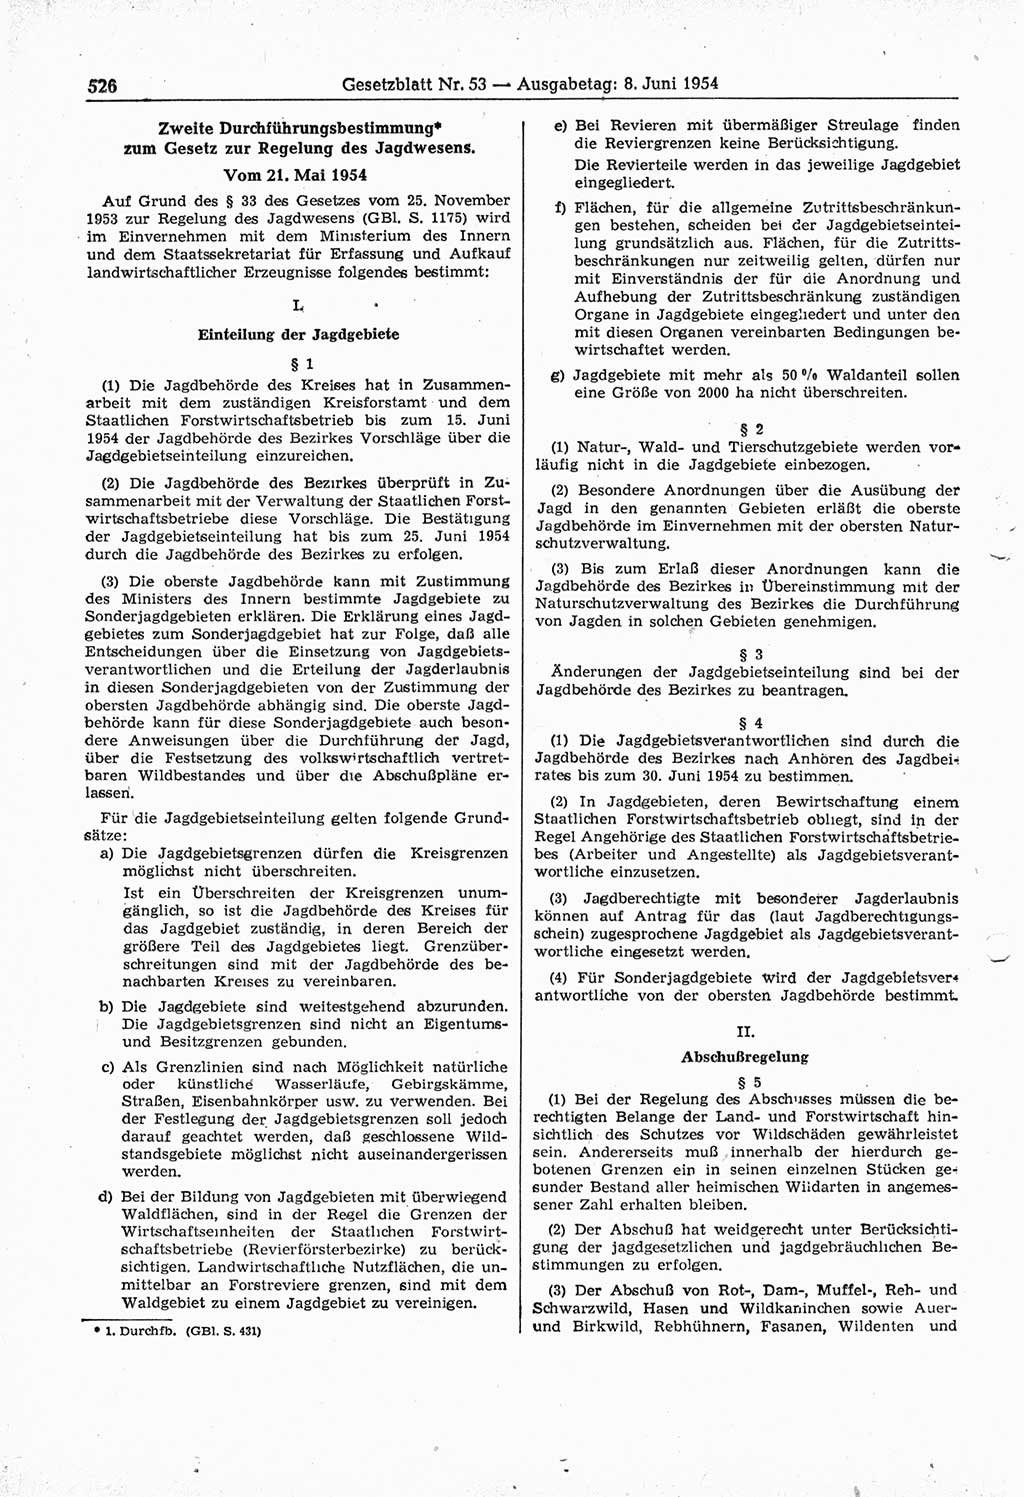 Gesetzblatt (GBl.) der Deutschen Demokratischen Republik (DDR) 1954, Seite 526 (GBl. DDR 1954, S. 526)